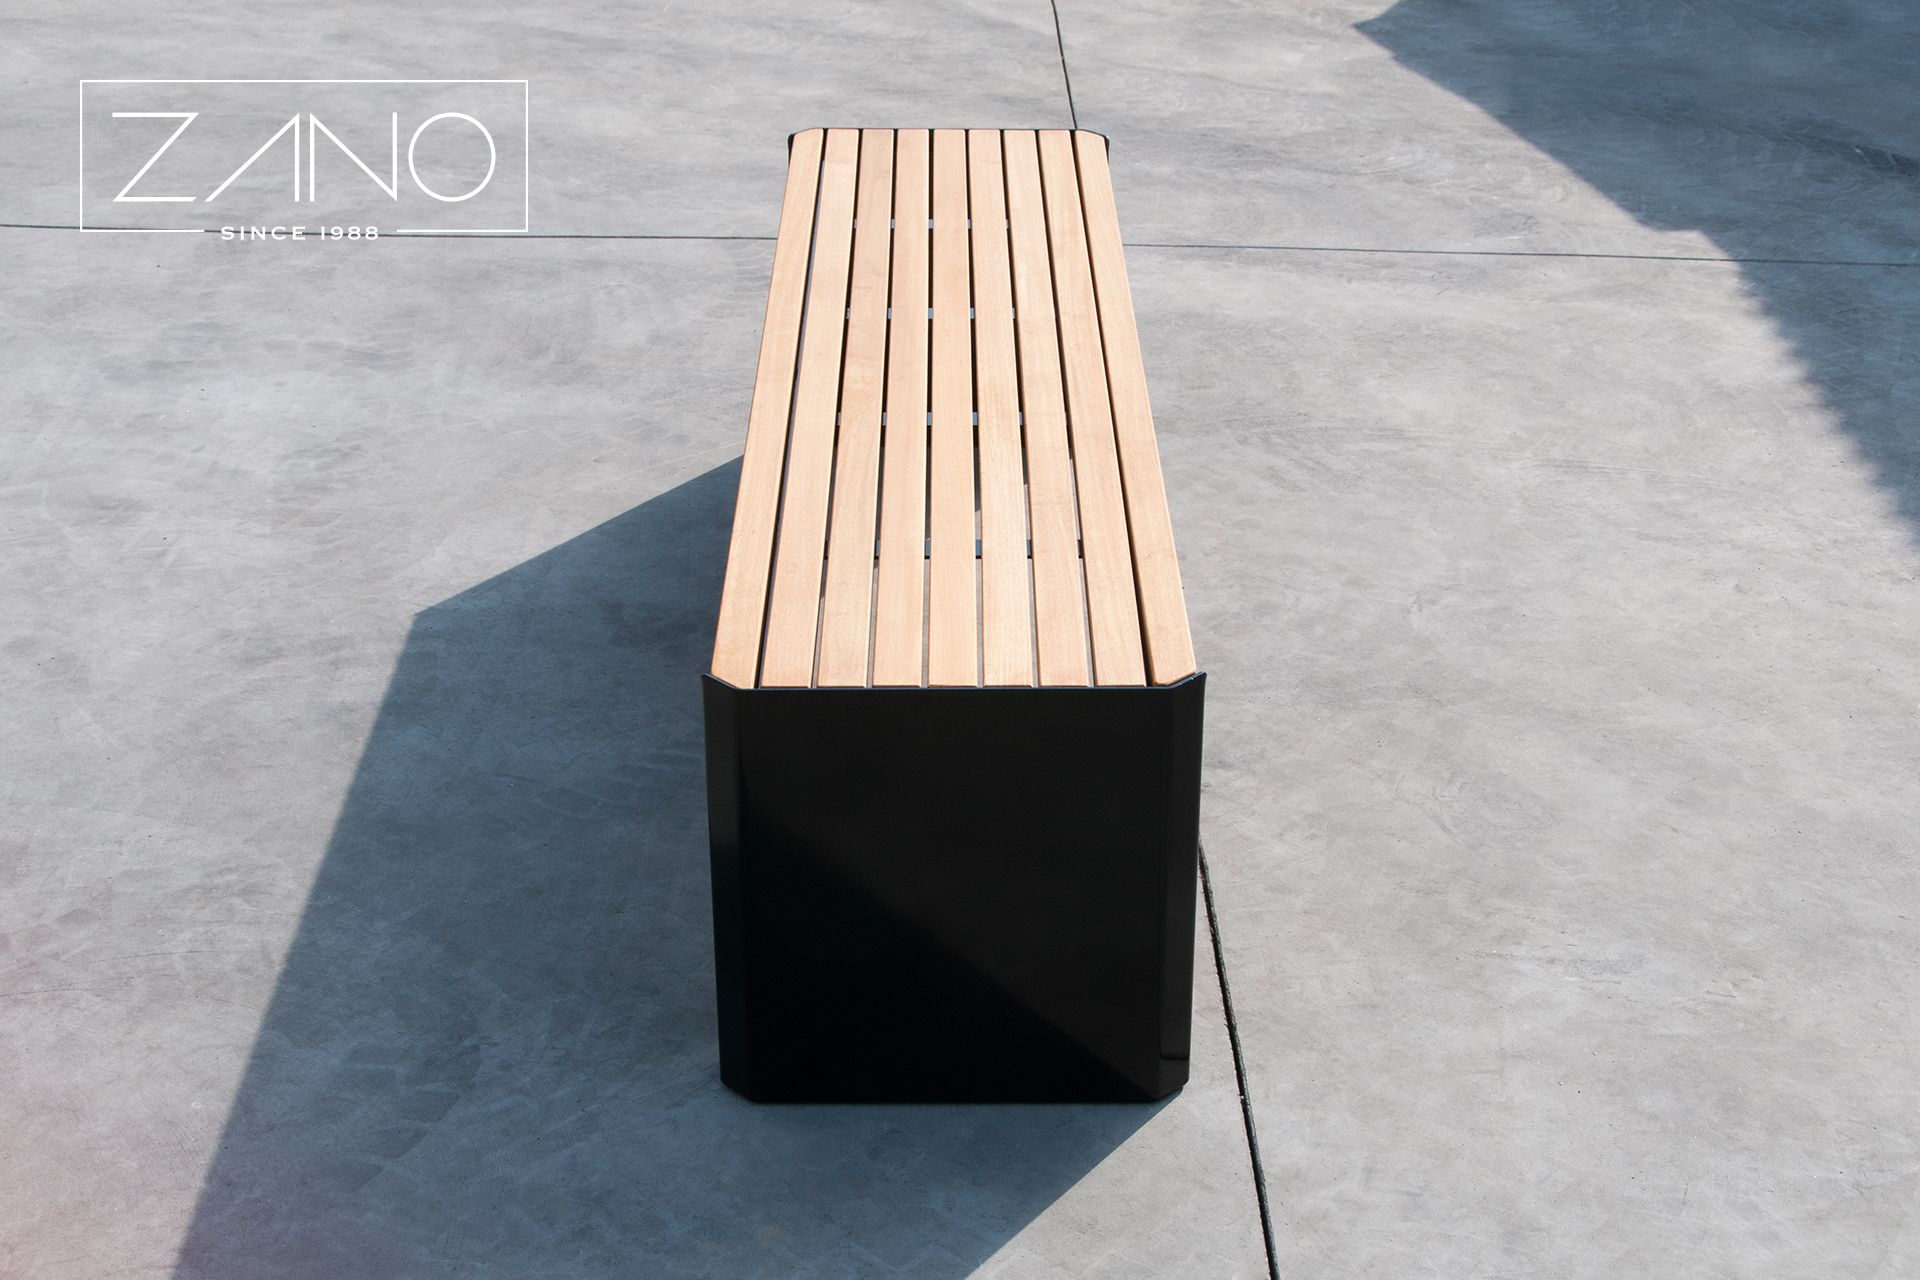 Nowoczesna ławka miejska o minimalistycznym designie